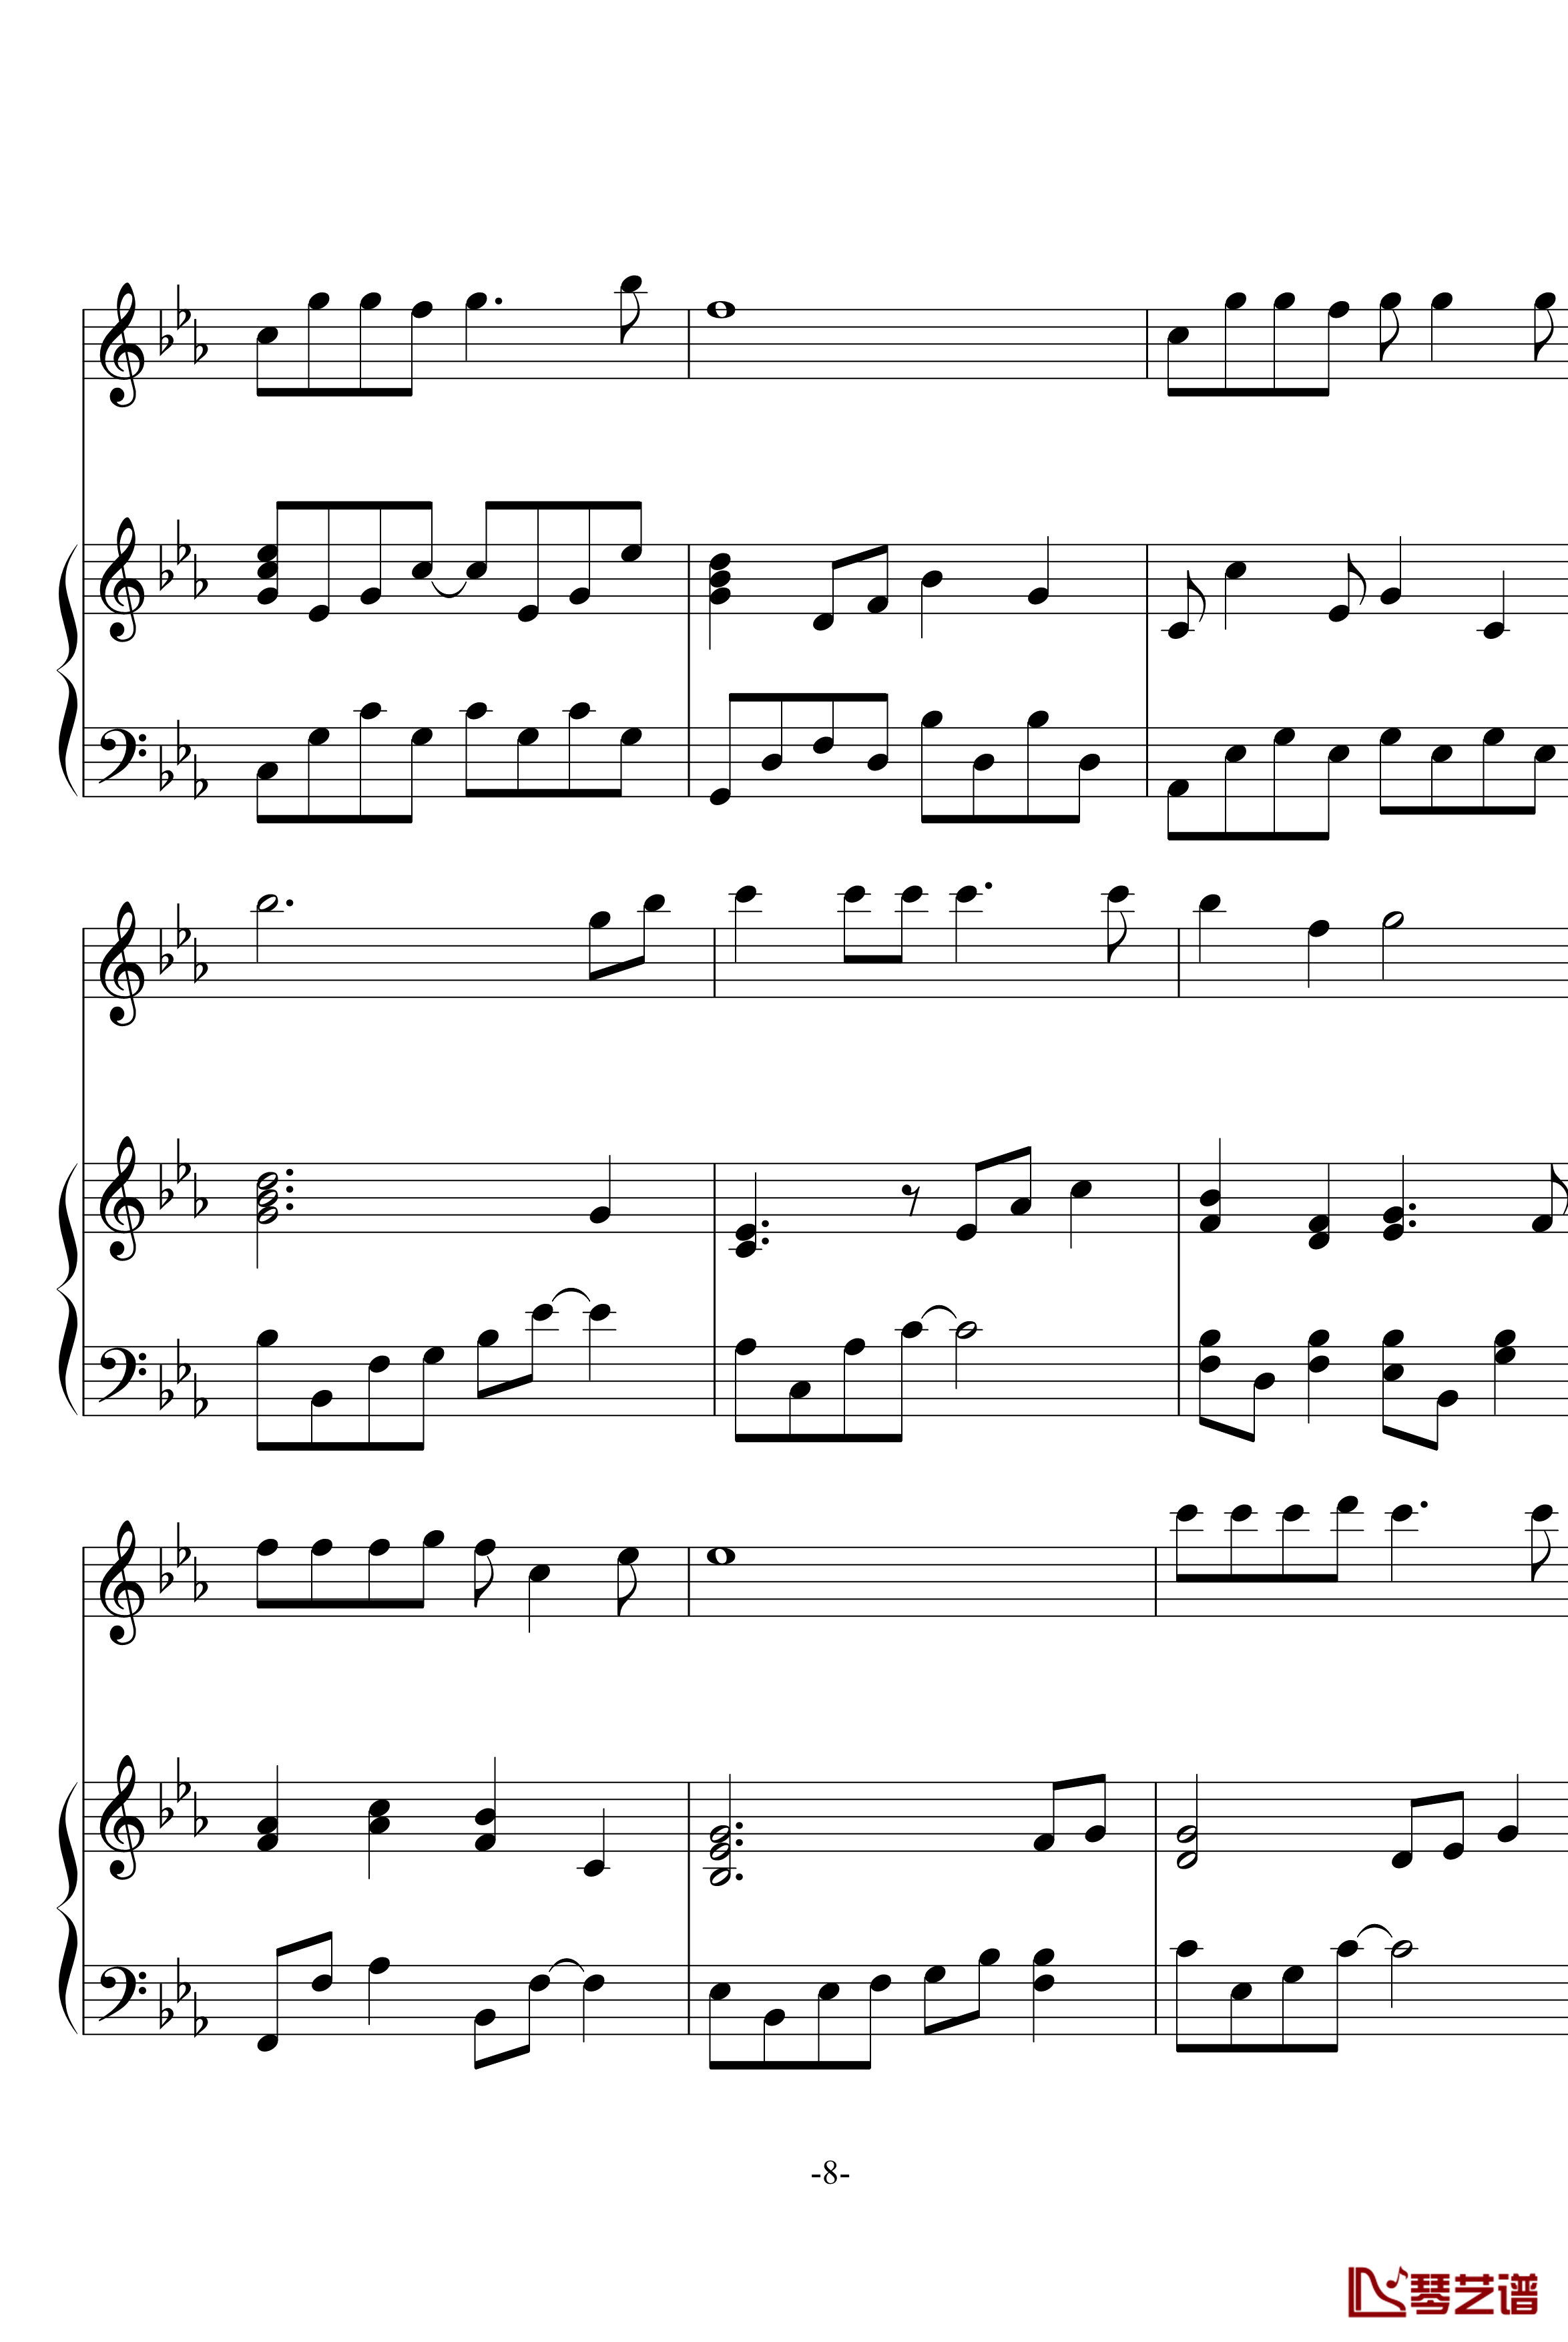 幽灵公主笛子与钢琴钢琴谱-OST-久石让8